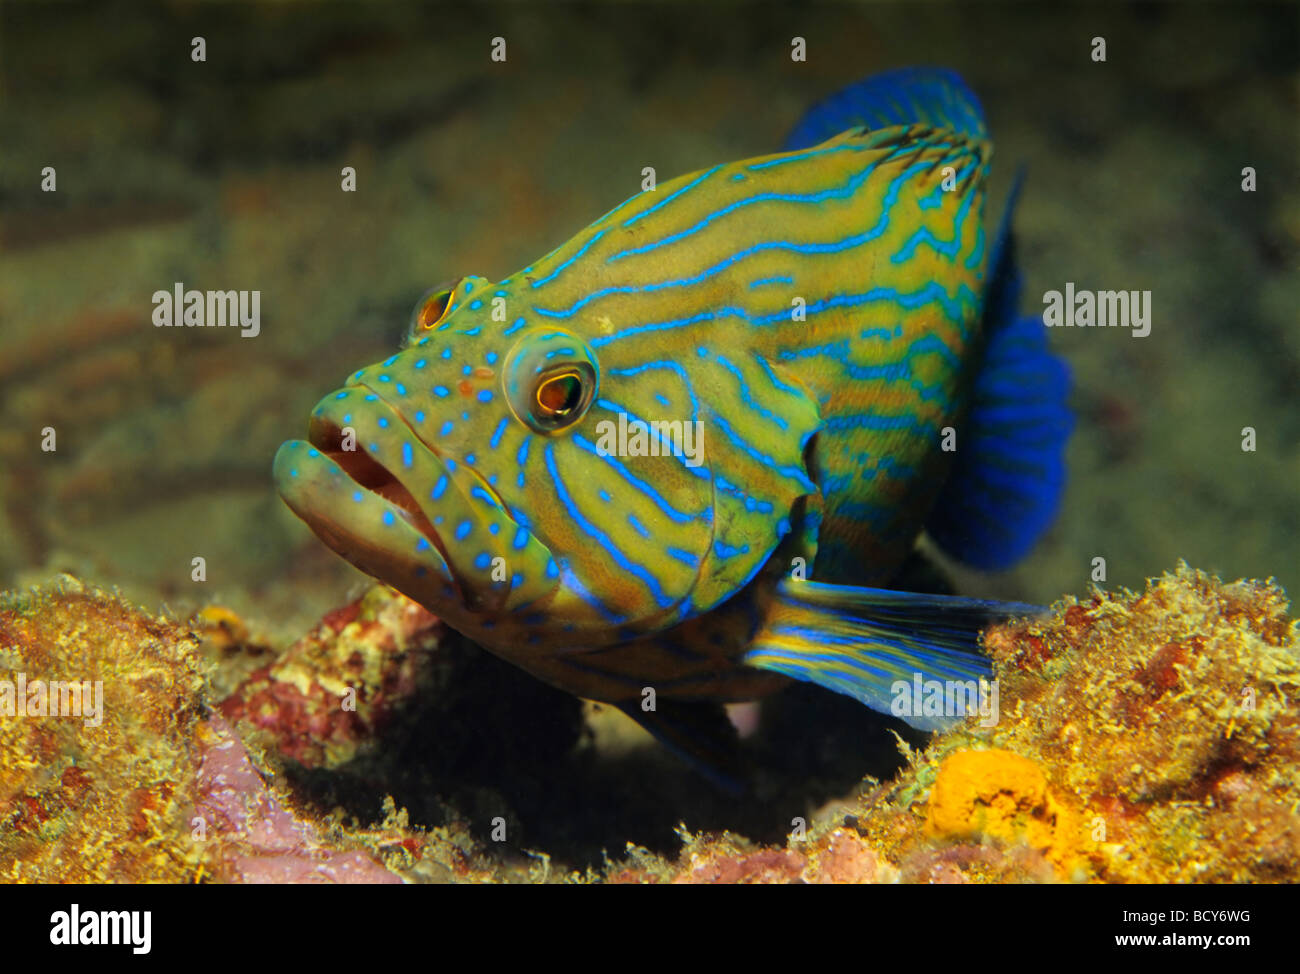 Bande bleue le mérou (Cephalopholis formosa) dans les récifs coralliens, les îles Similan, la mer d'Andaman, en Thaïlande, Asie, Océan Indien Banque D'Images